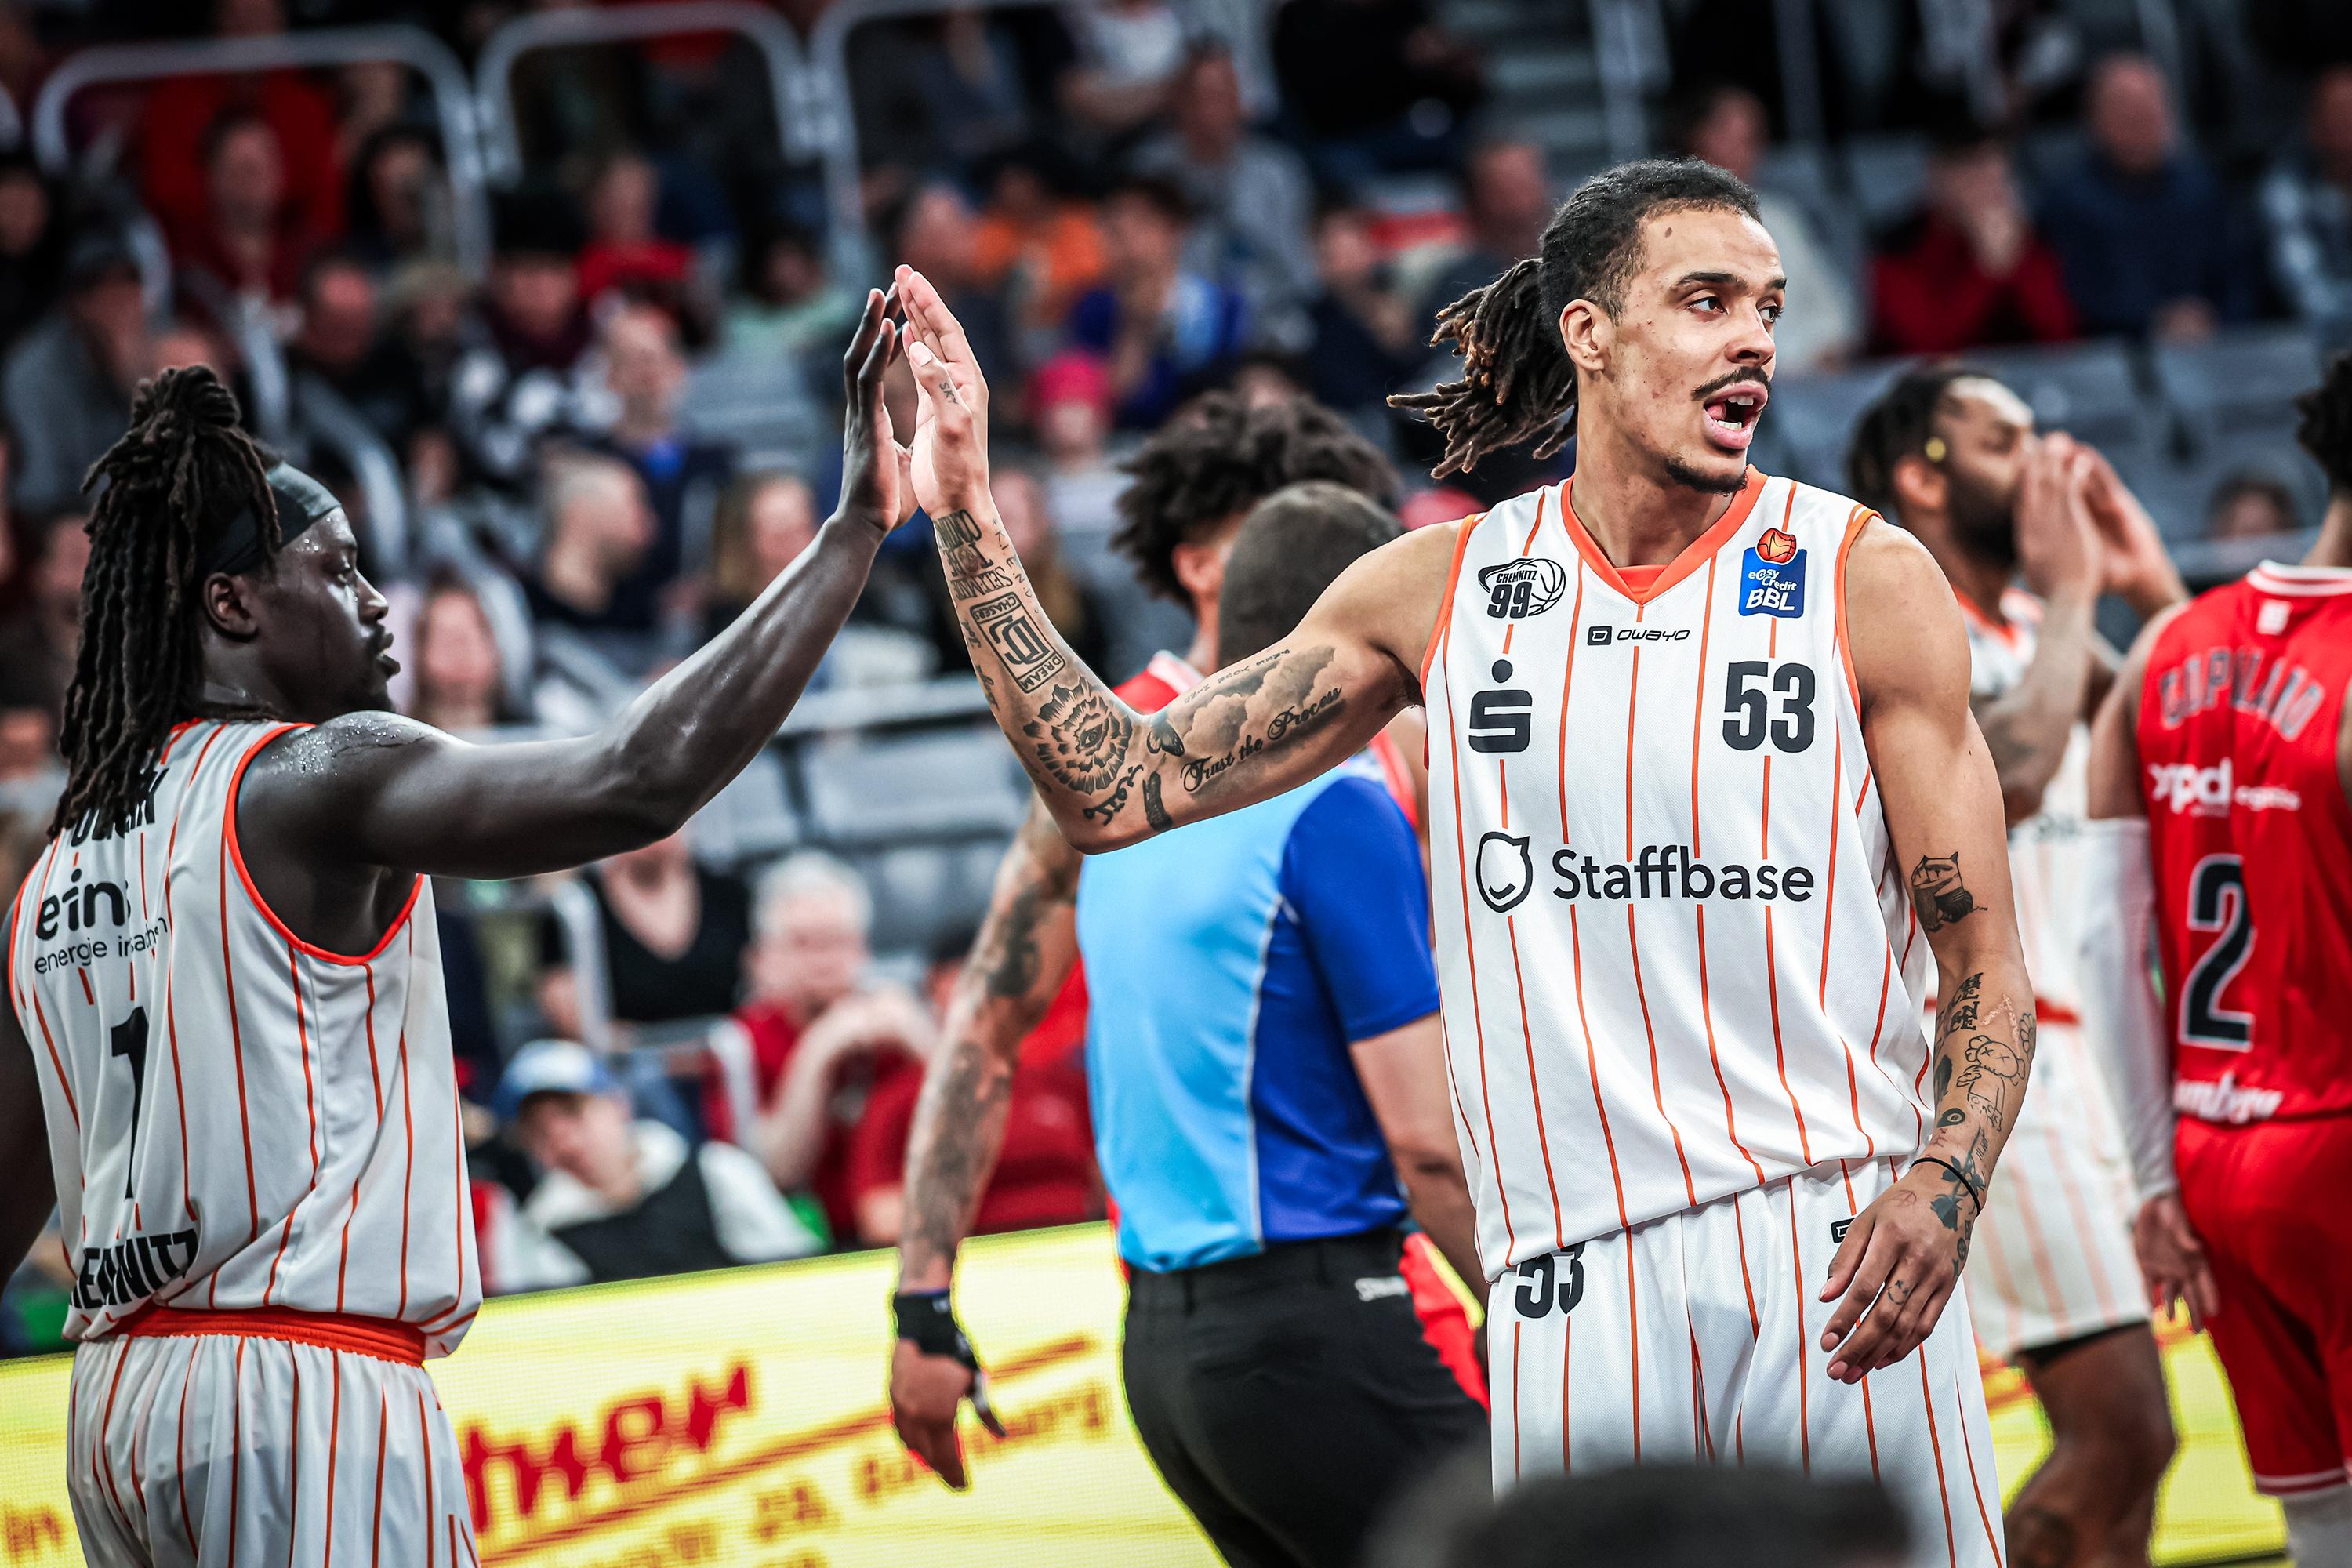 Am Mittwoch starten die NINERS Chemnitz ins Halbfinale des FIBA Europe Cups. Im Hinspiel in der Bilbao Arena (10.000) geht es zunächst darum, einen möglichst hohen Vorsprung vorzulegen bzw. nicht allzu hoch zu verlieren. Die Entscheidung fällt dann in der kommenden Woche im Rückspiel in Chemnitz (die Resultate werden addiert). 